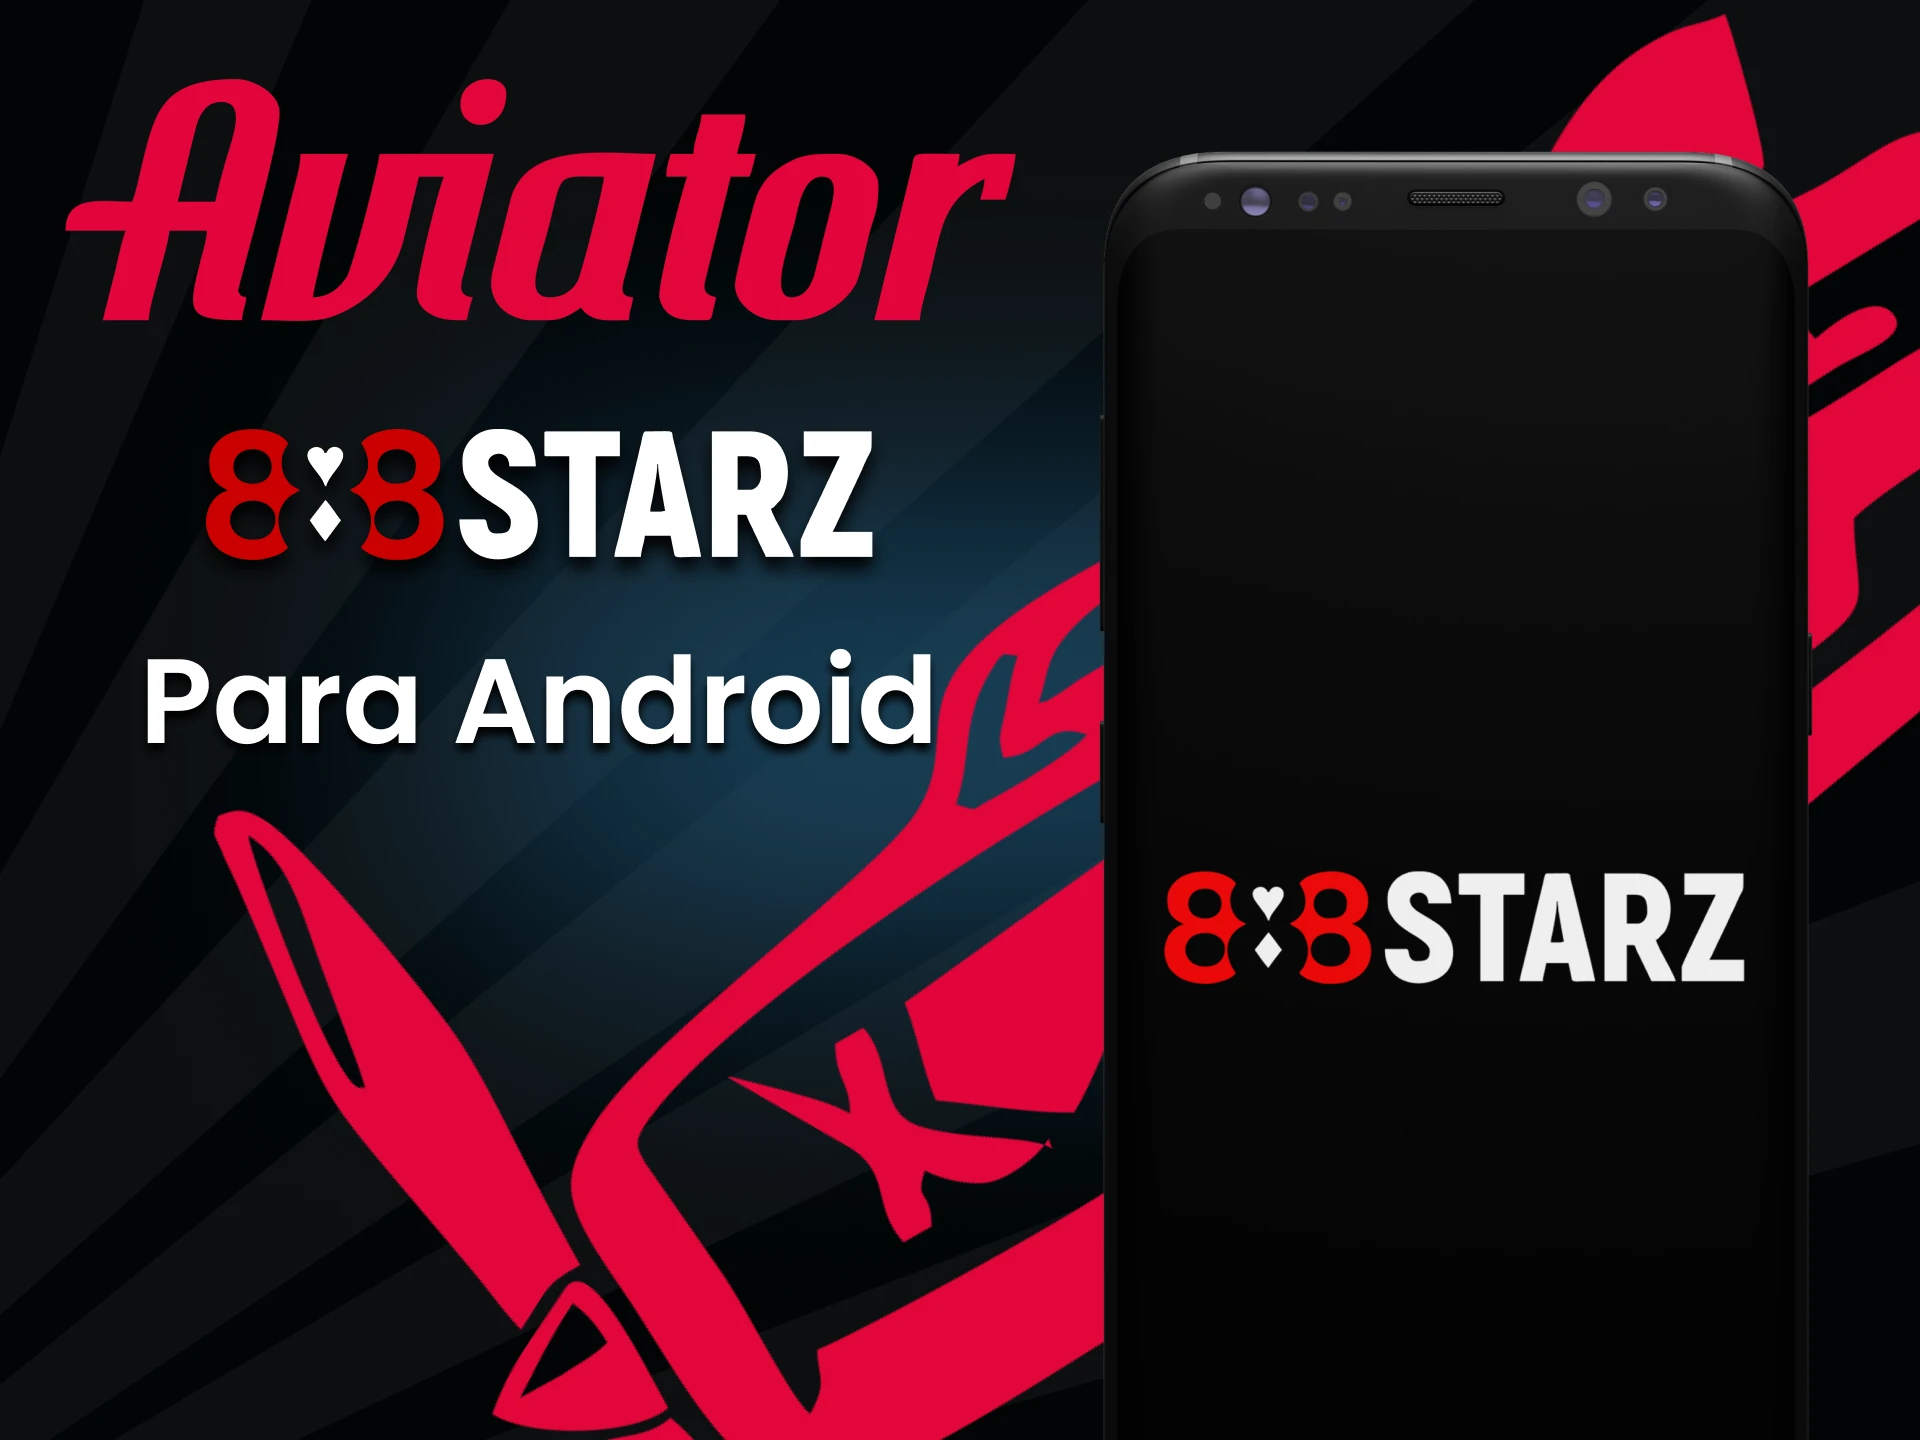 Baixe o aplicativo 888starz para jogar Aviator no Android.